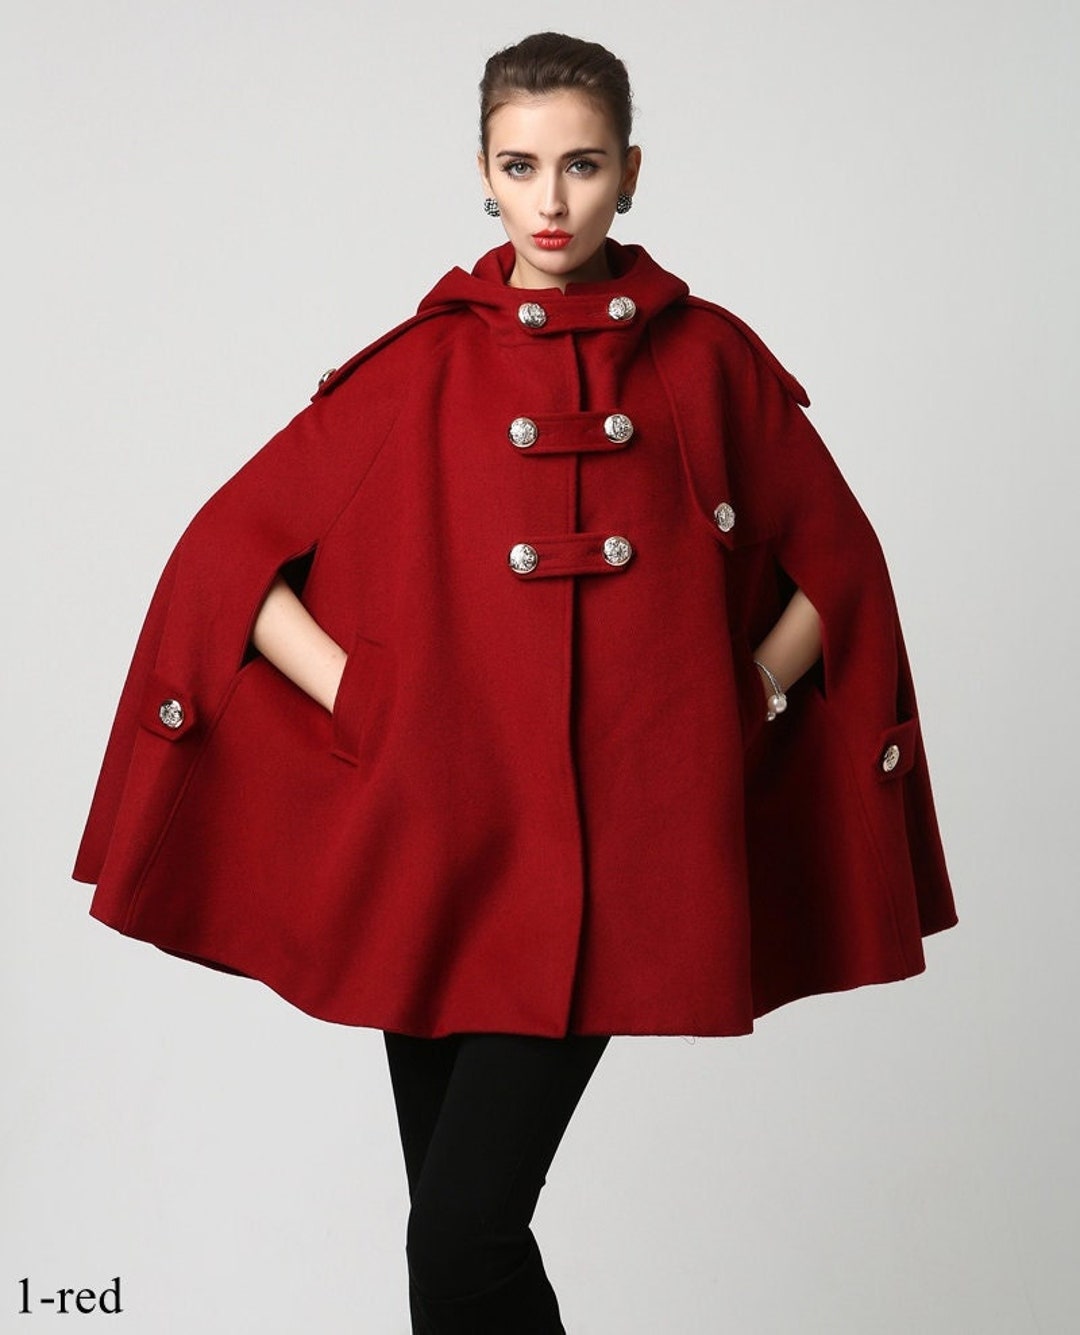 Women's Winter Red Wool Hooded Wool Cape Coat, Plus Size Cape Coat ...